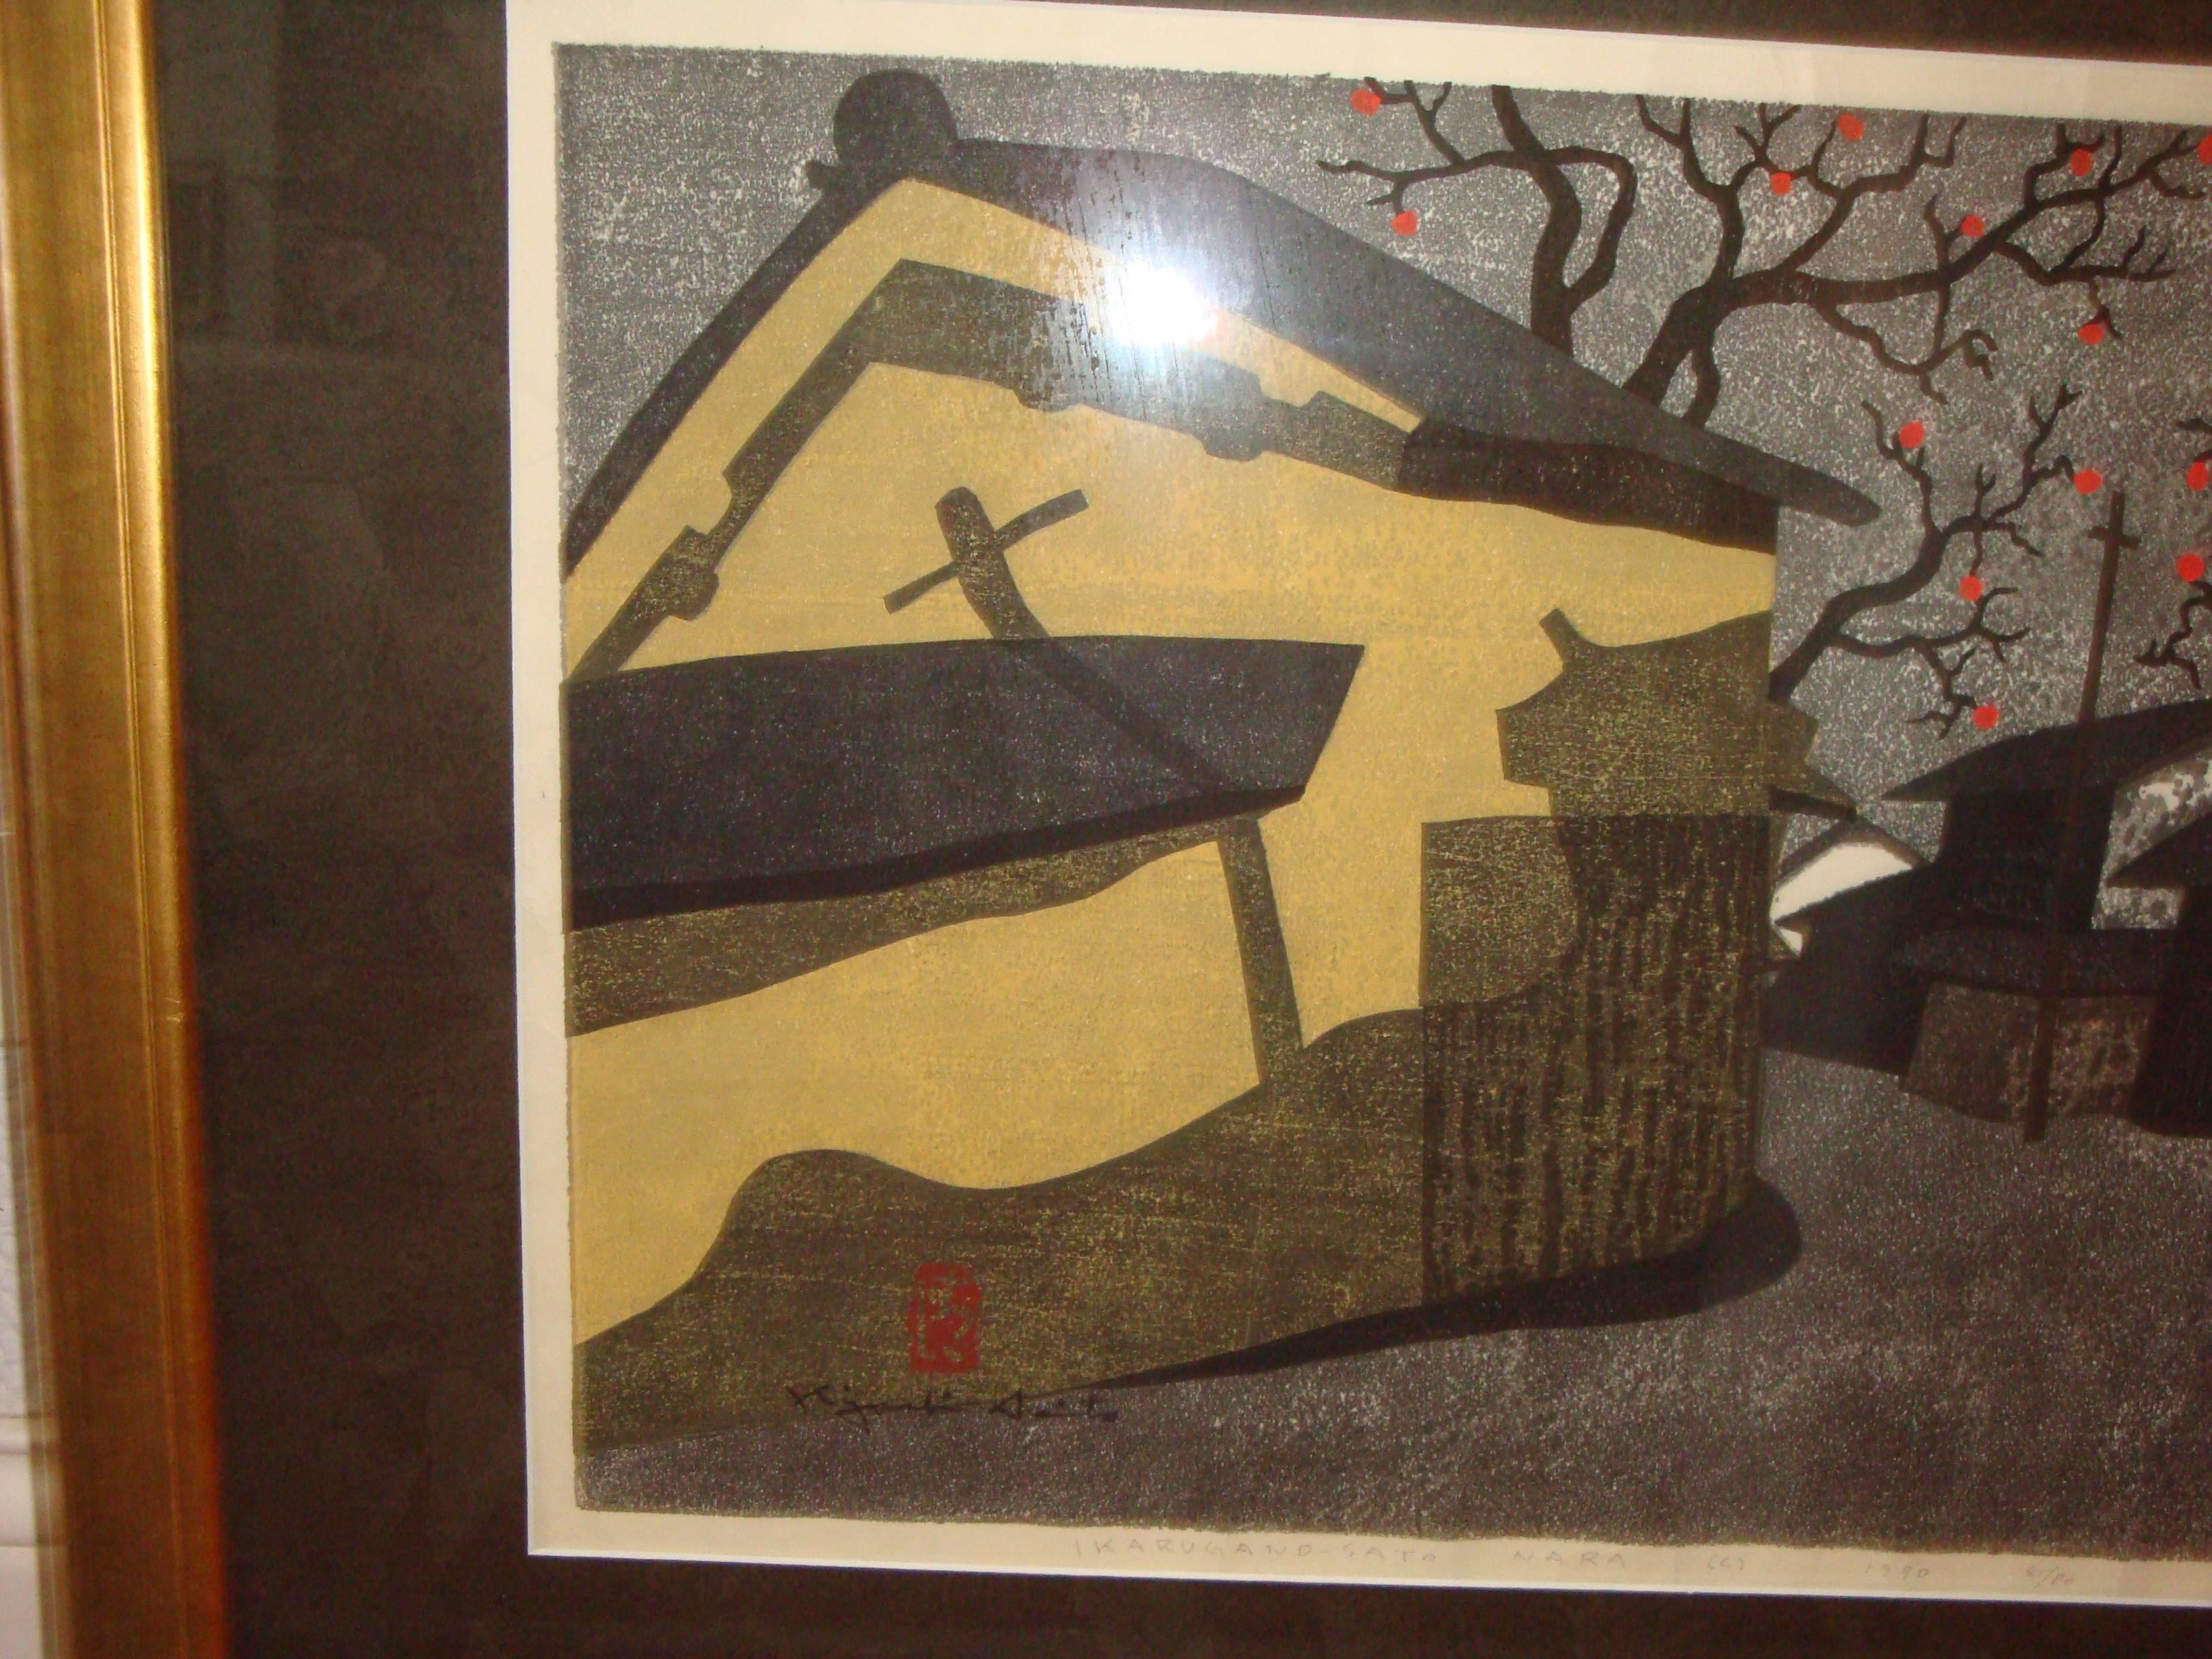 This is a 1970s Japanese wood block print by Kiyoshi Saito titled,
Ikarugano-sato Nara (C) 1970 41/80.